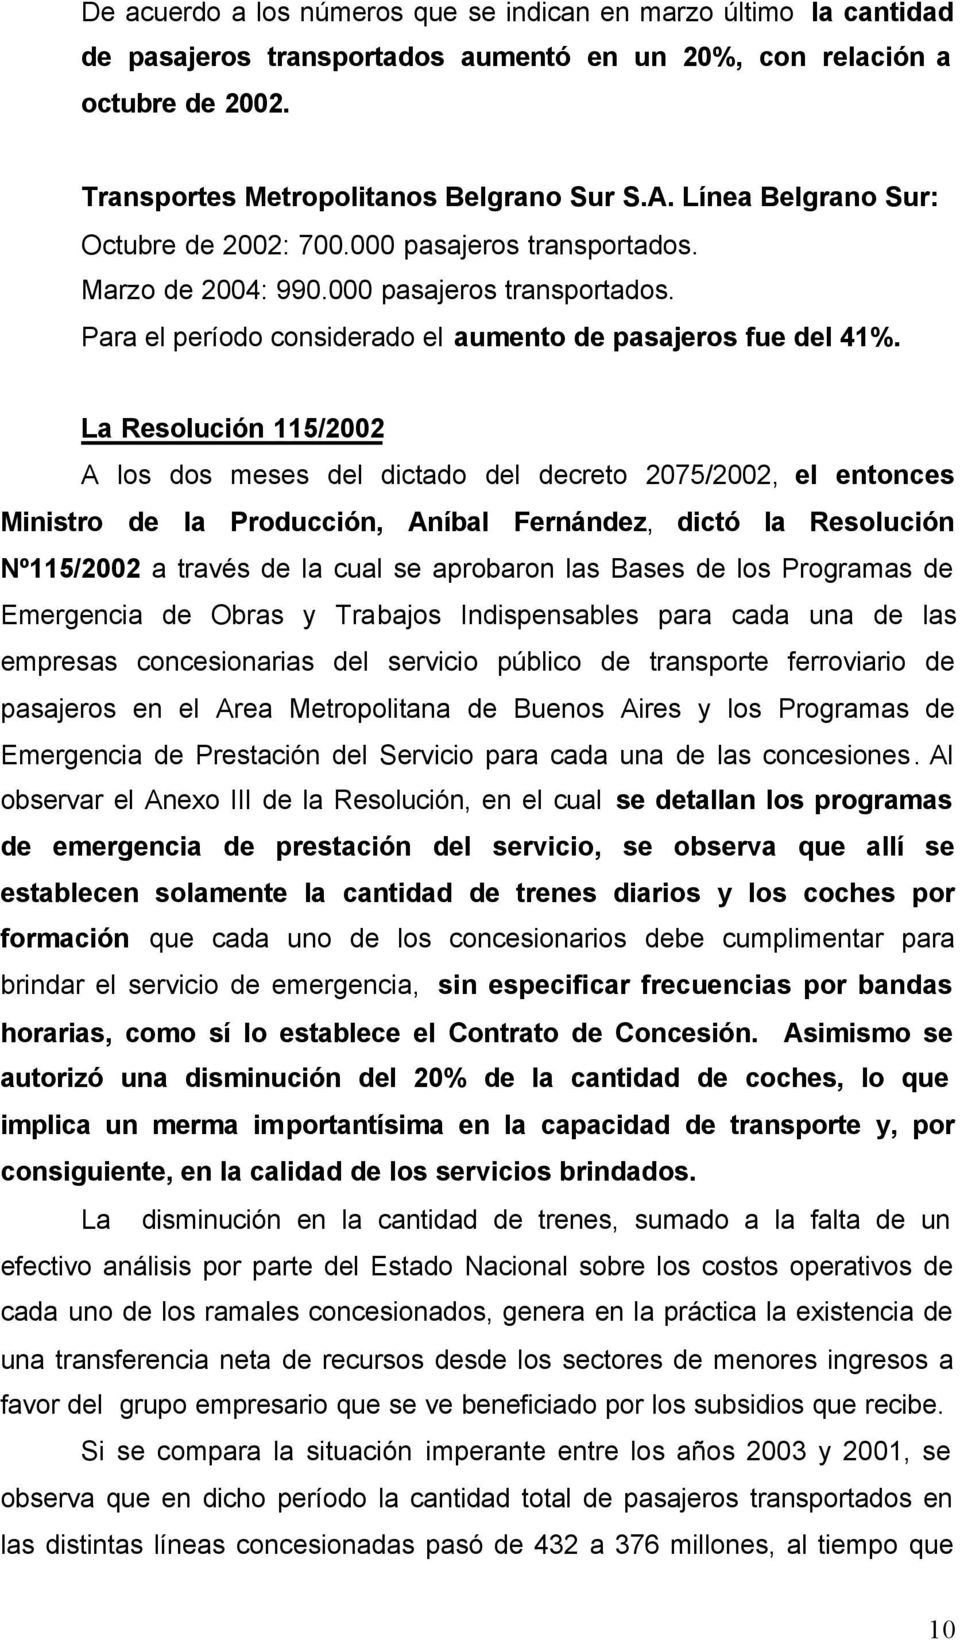 La Resolución 115/2002 A los dos meses del dictado del decreto 2075/2002, el entonces Ministro de la Producción, Aníbal Fernández, dictó la Resolución Nº115/2002 a través de la cual se aprobaron las